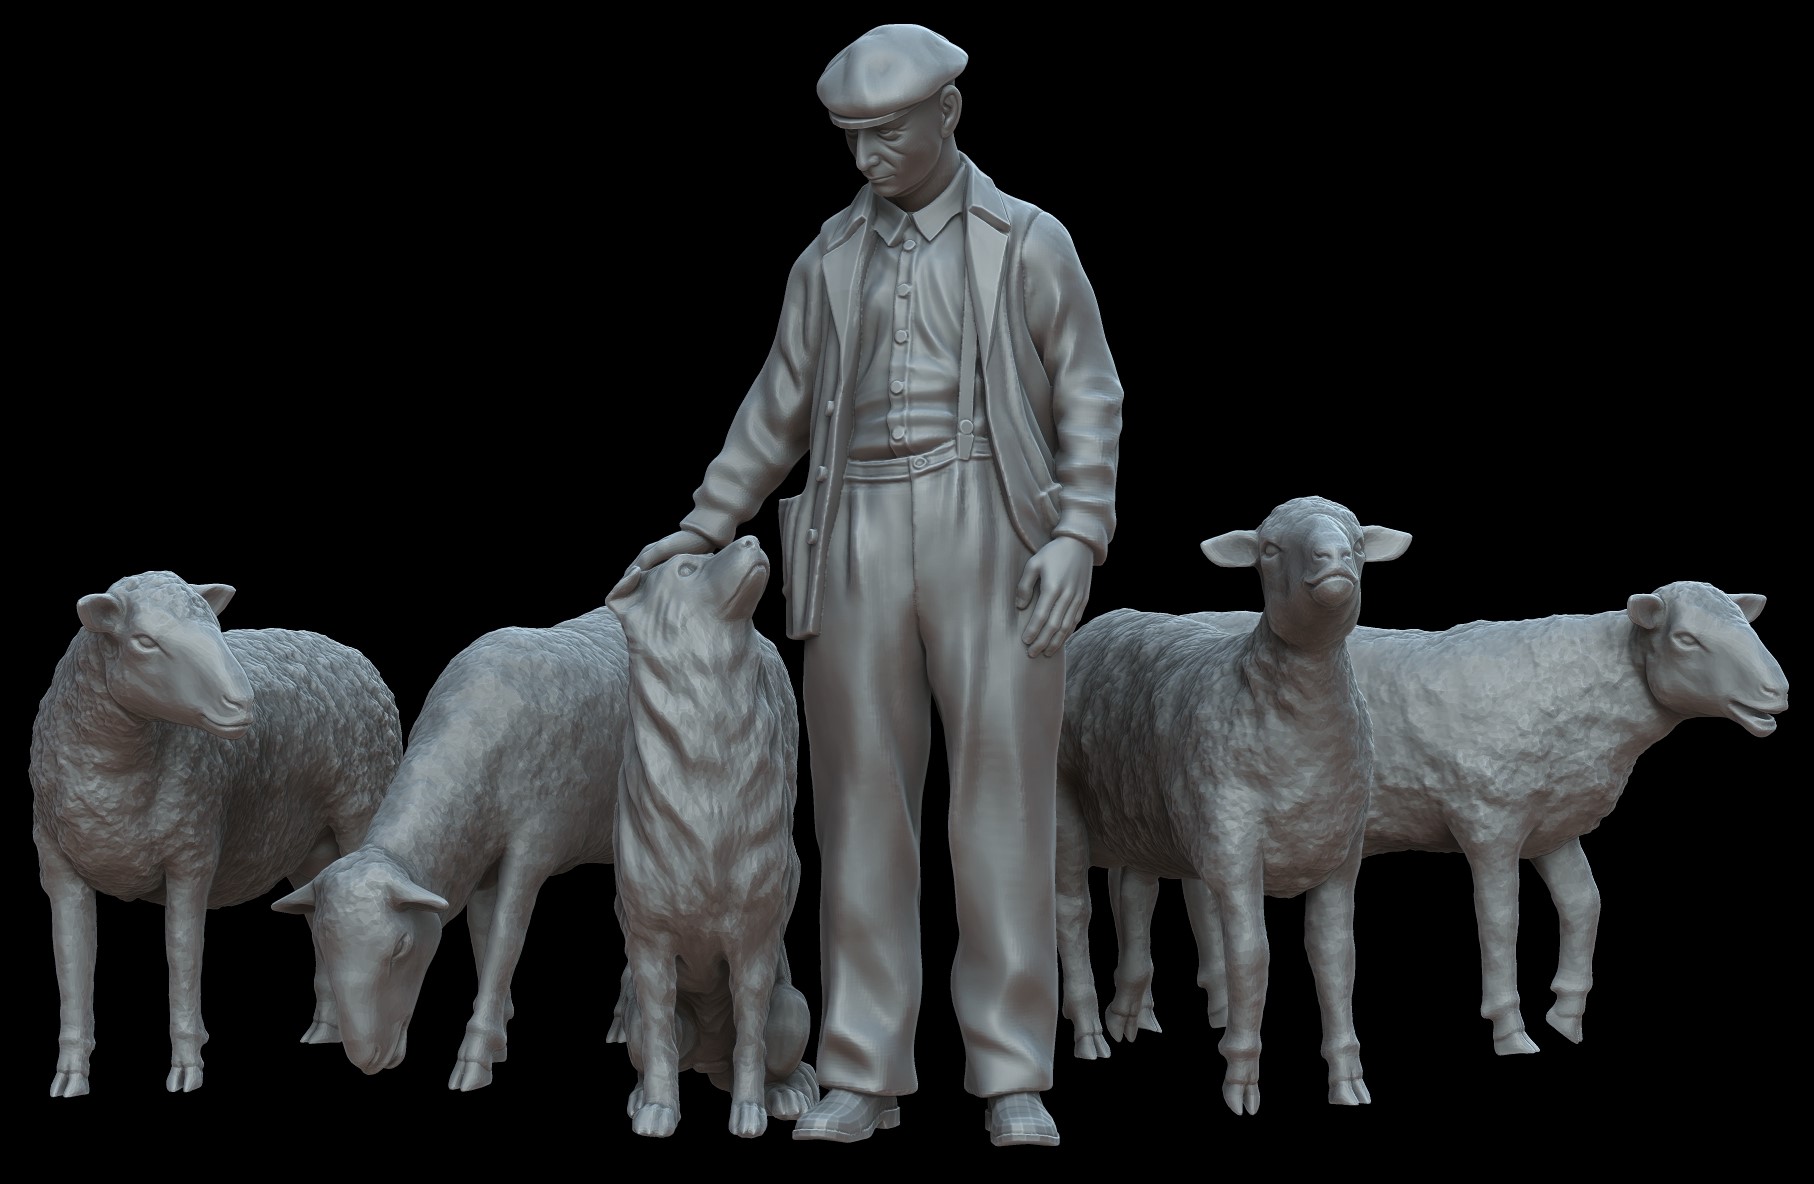 Shepherd with dog & sheep